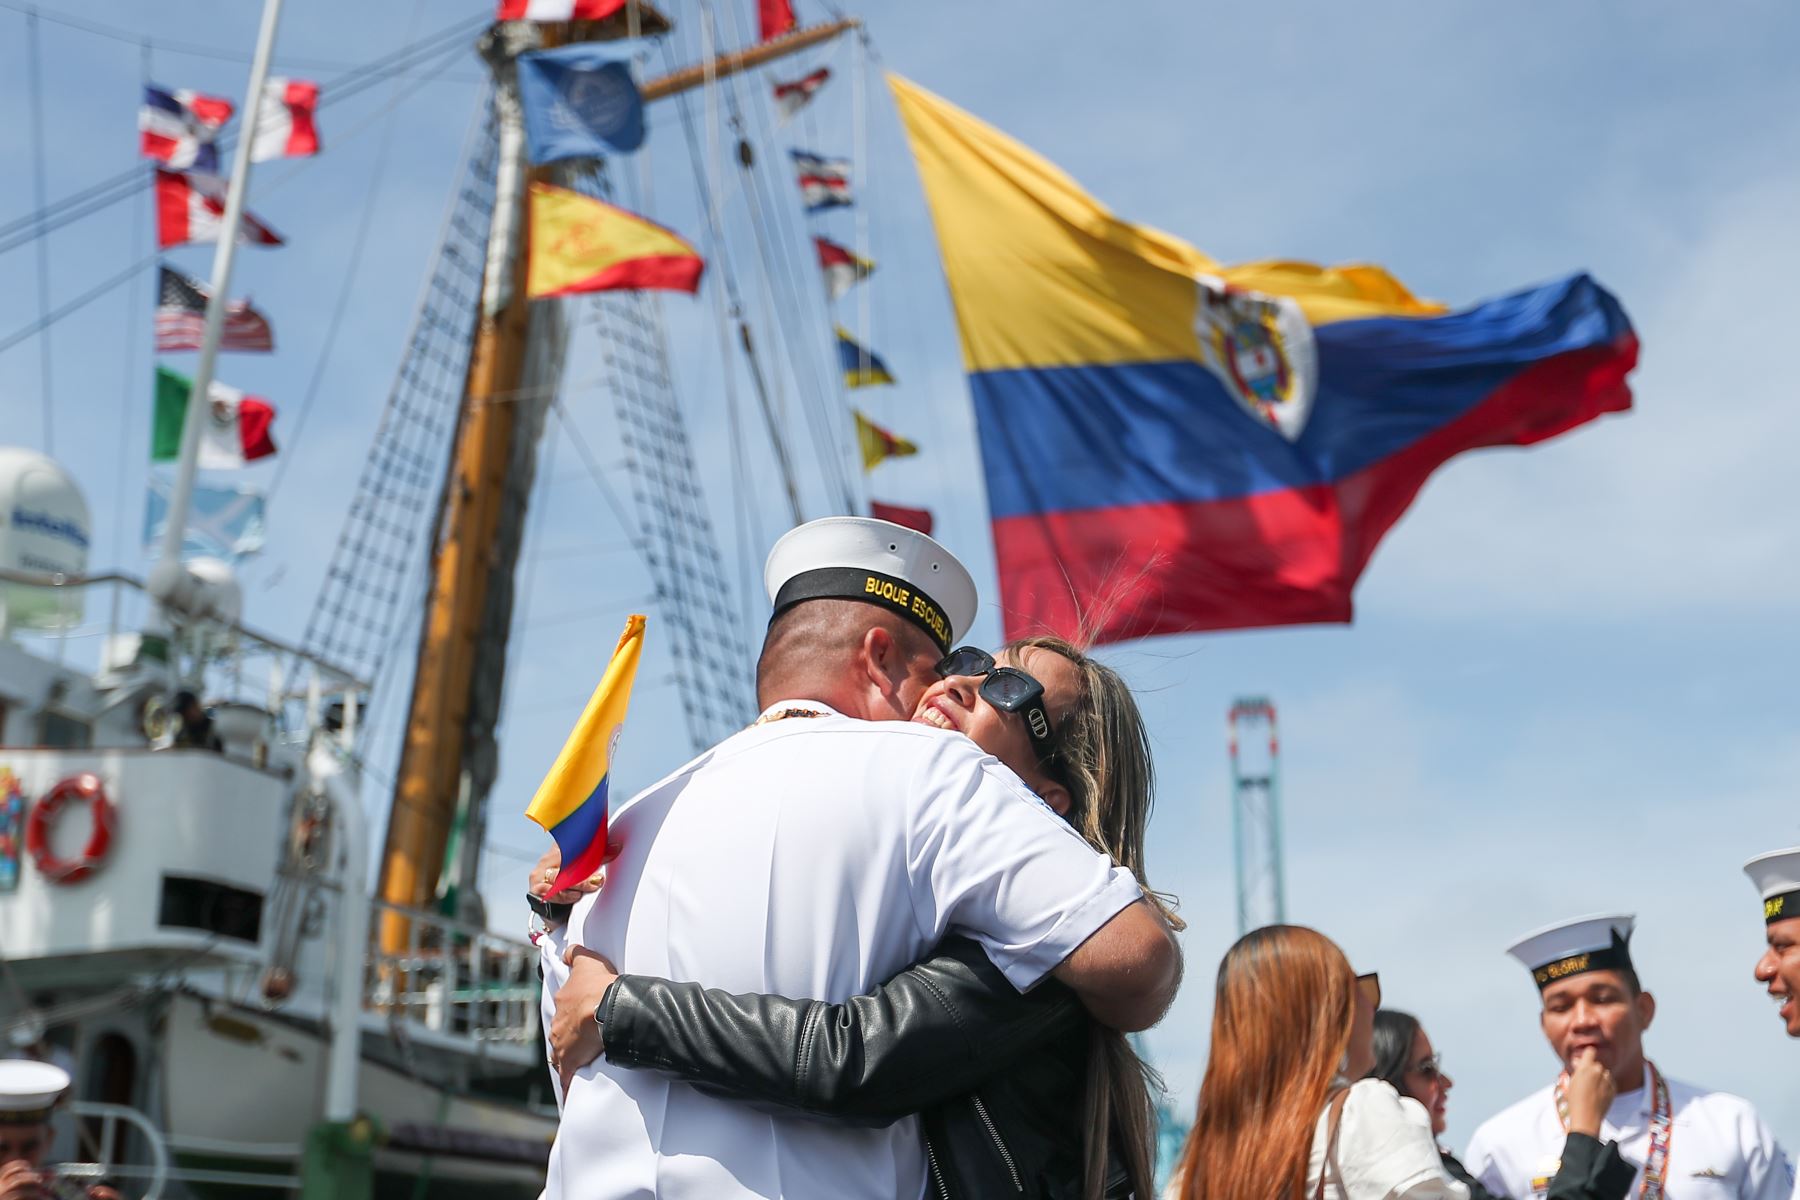 El buque ARC “Gloria” de Colombia tiene como misión principal contribuir en la formación y entrenamiento de los alumnos de sus centros de formación naval de oficiales y suboficiales, visita el Perú del 29 de octubre al 1 de noviembre. Foto: ANDINA/Ricardo Cuba